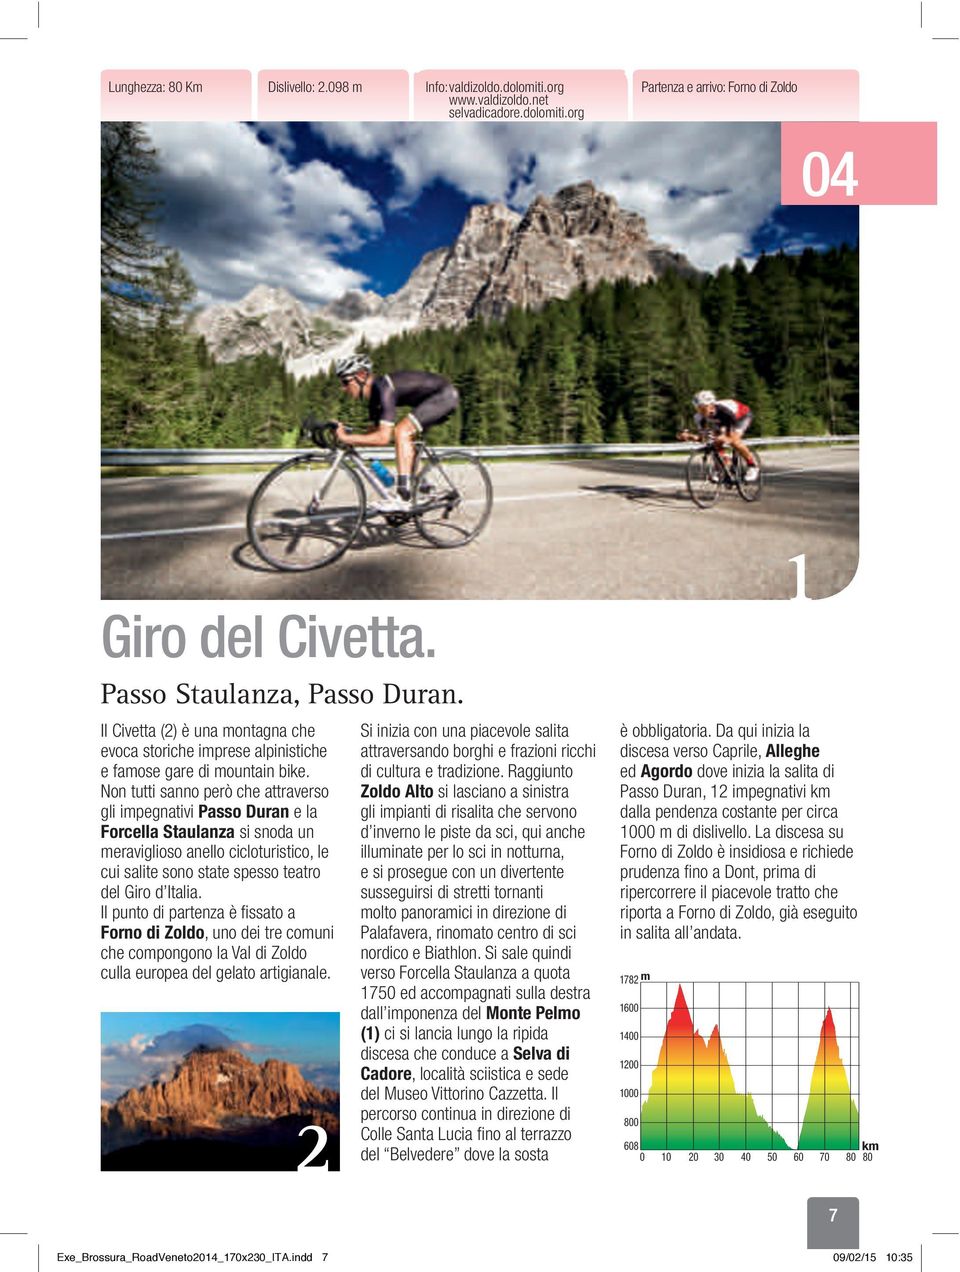 Non tutti sanno però che attraverso gli impegnativi Passo Duran e la Forcella Staulanza si snoda un meraviglioso anello cicloturistico, le cui salite sono state spesso teatro del Giro d Italia.